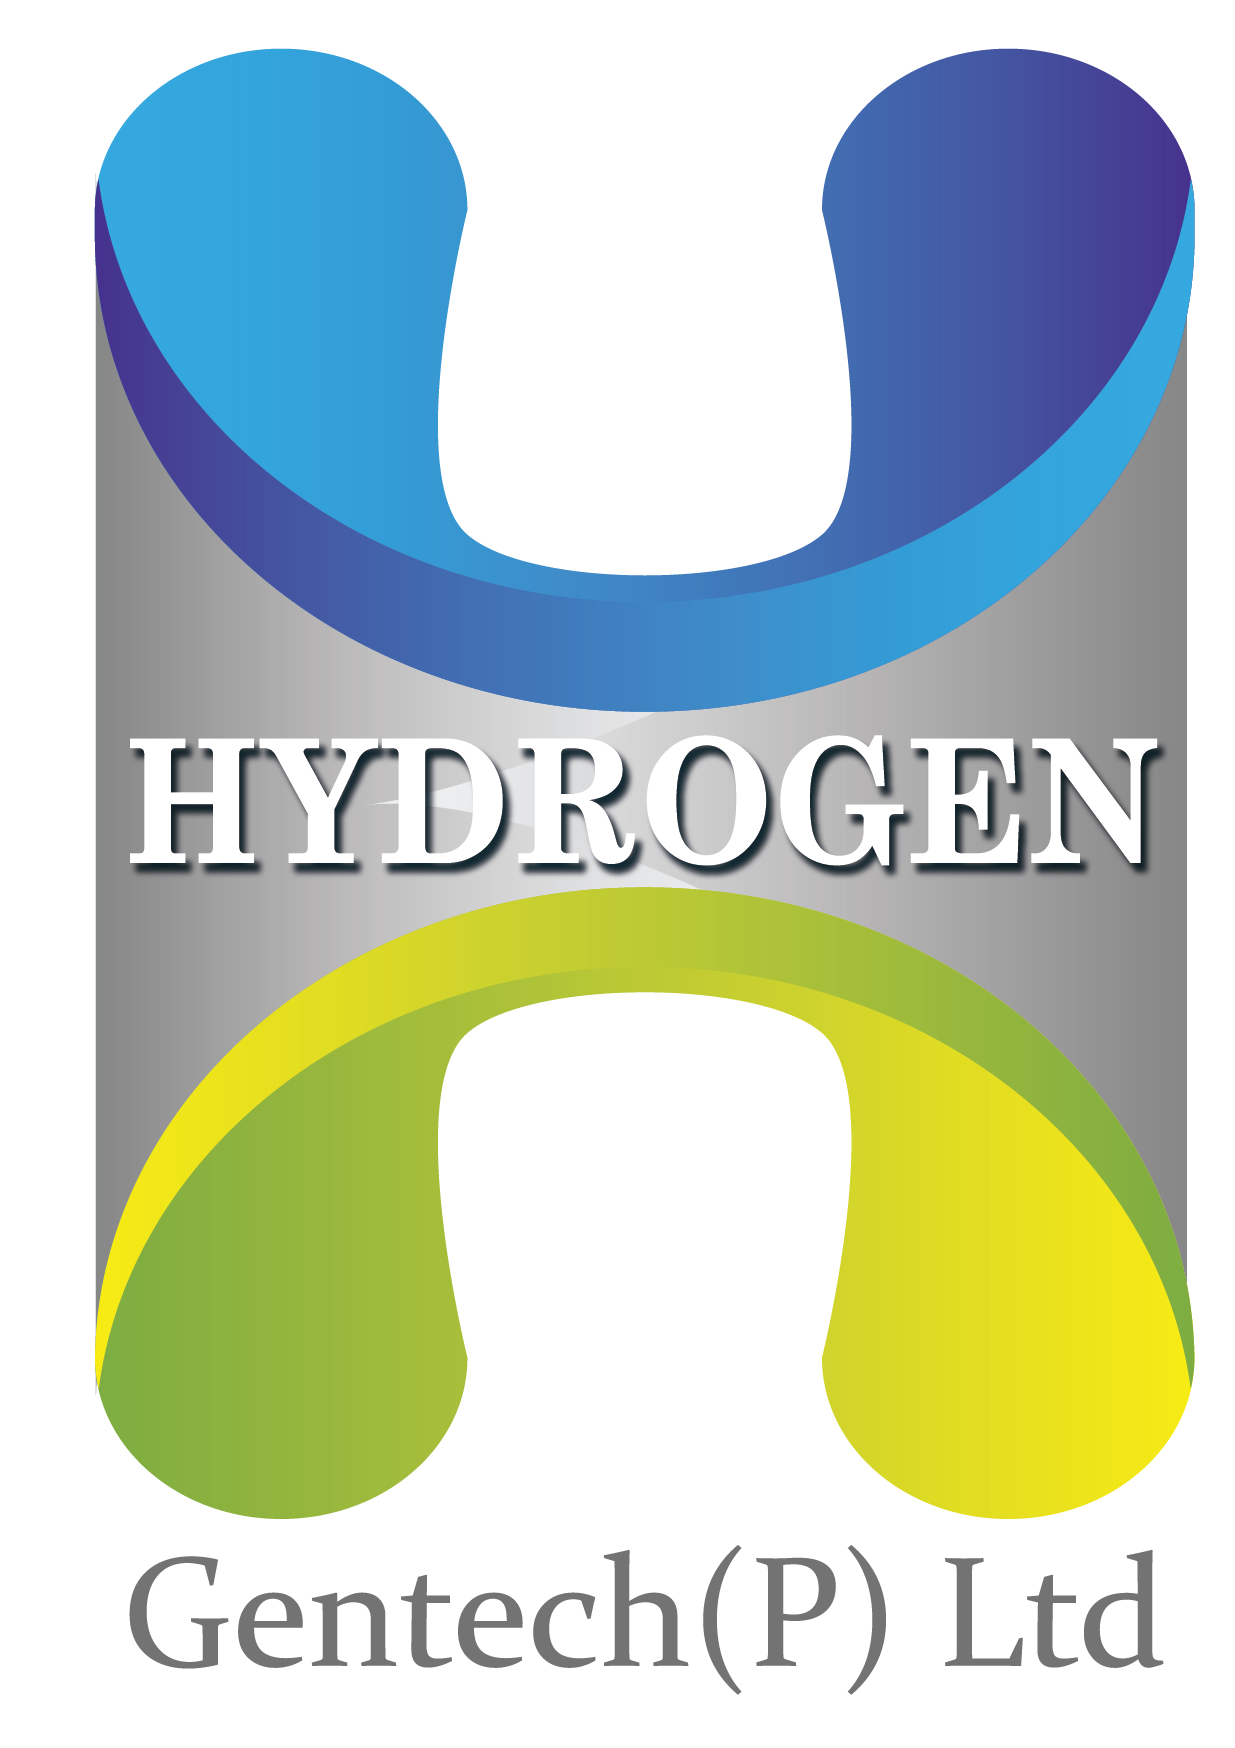 Hydrogengentech